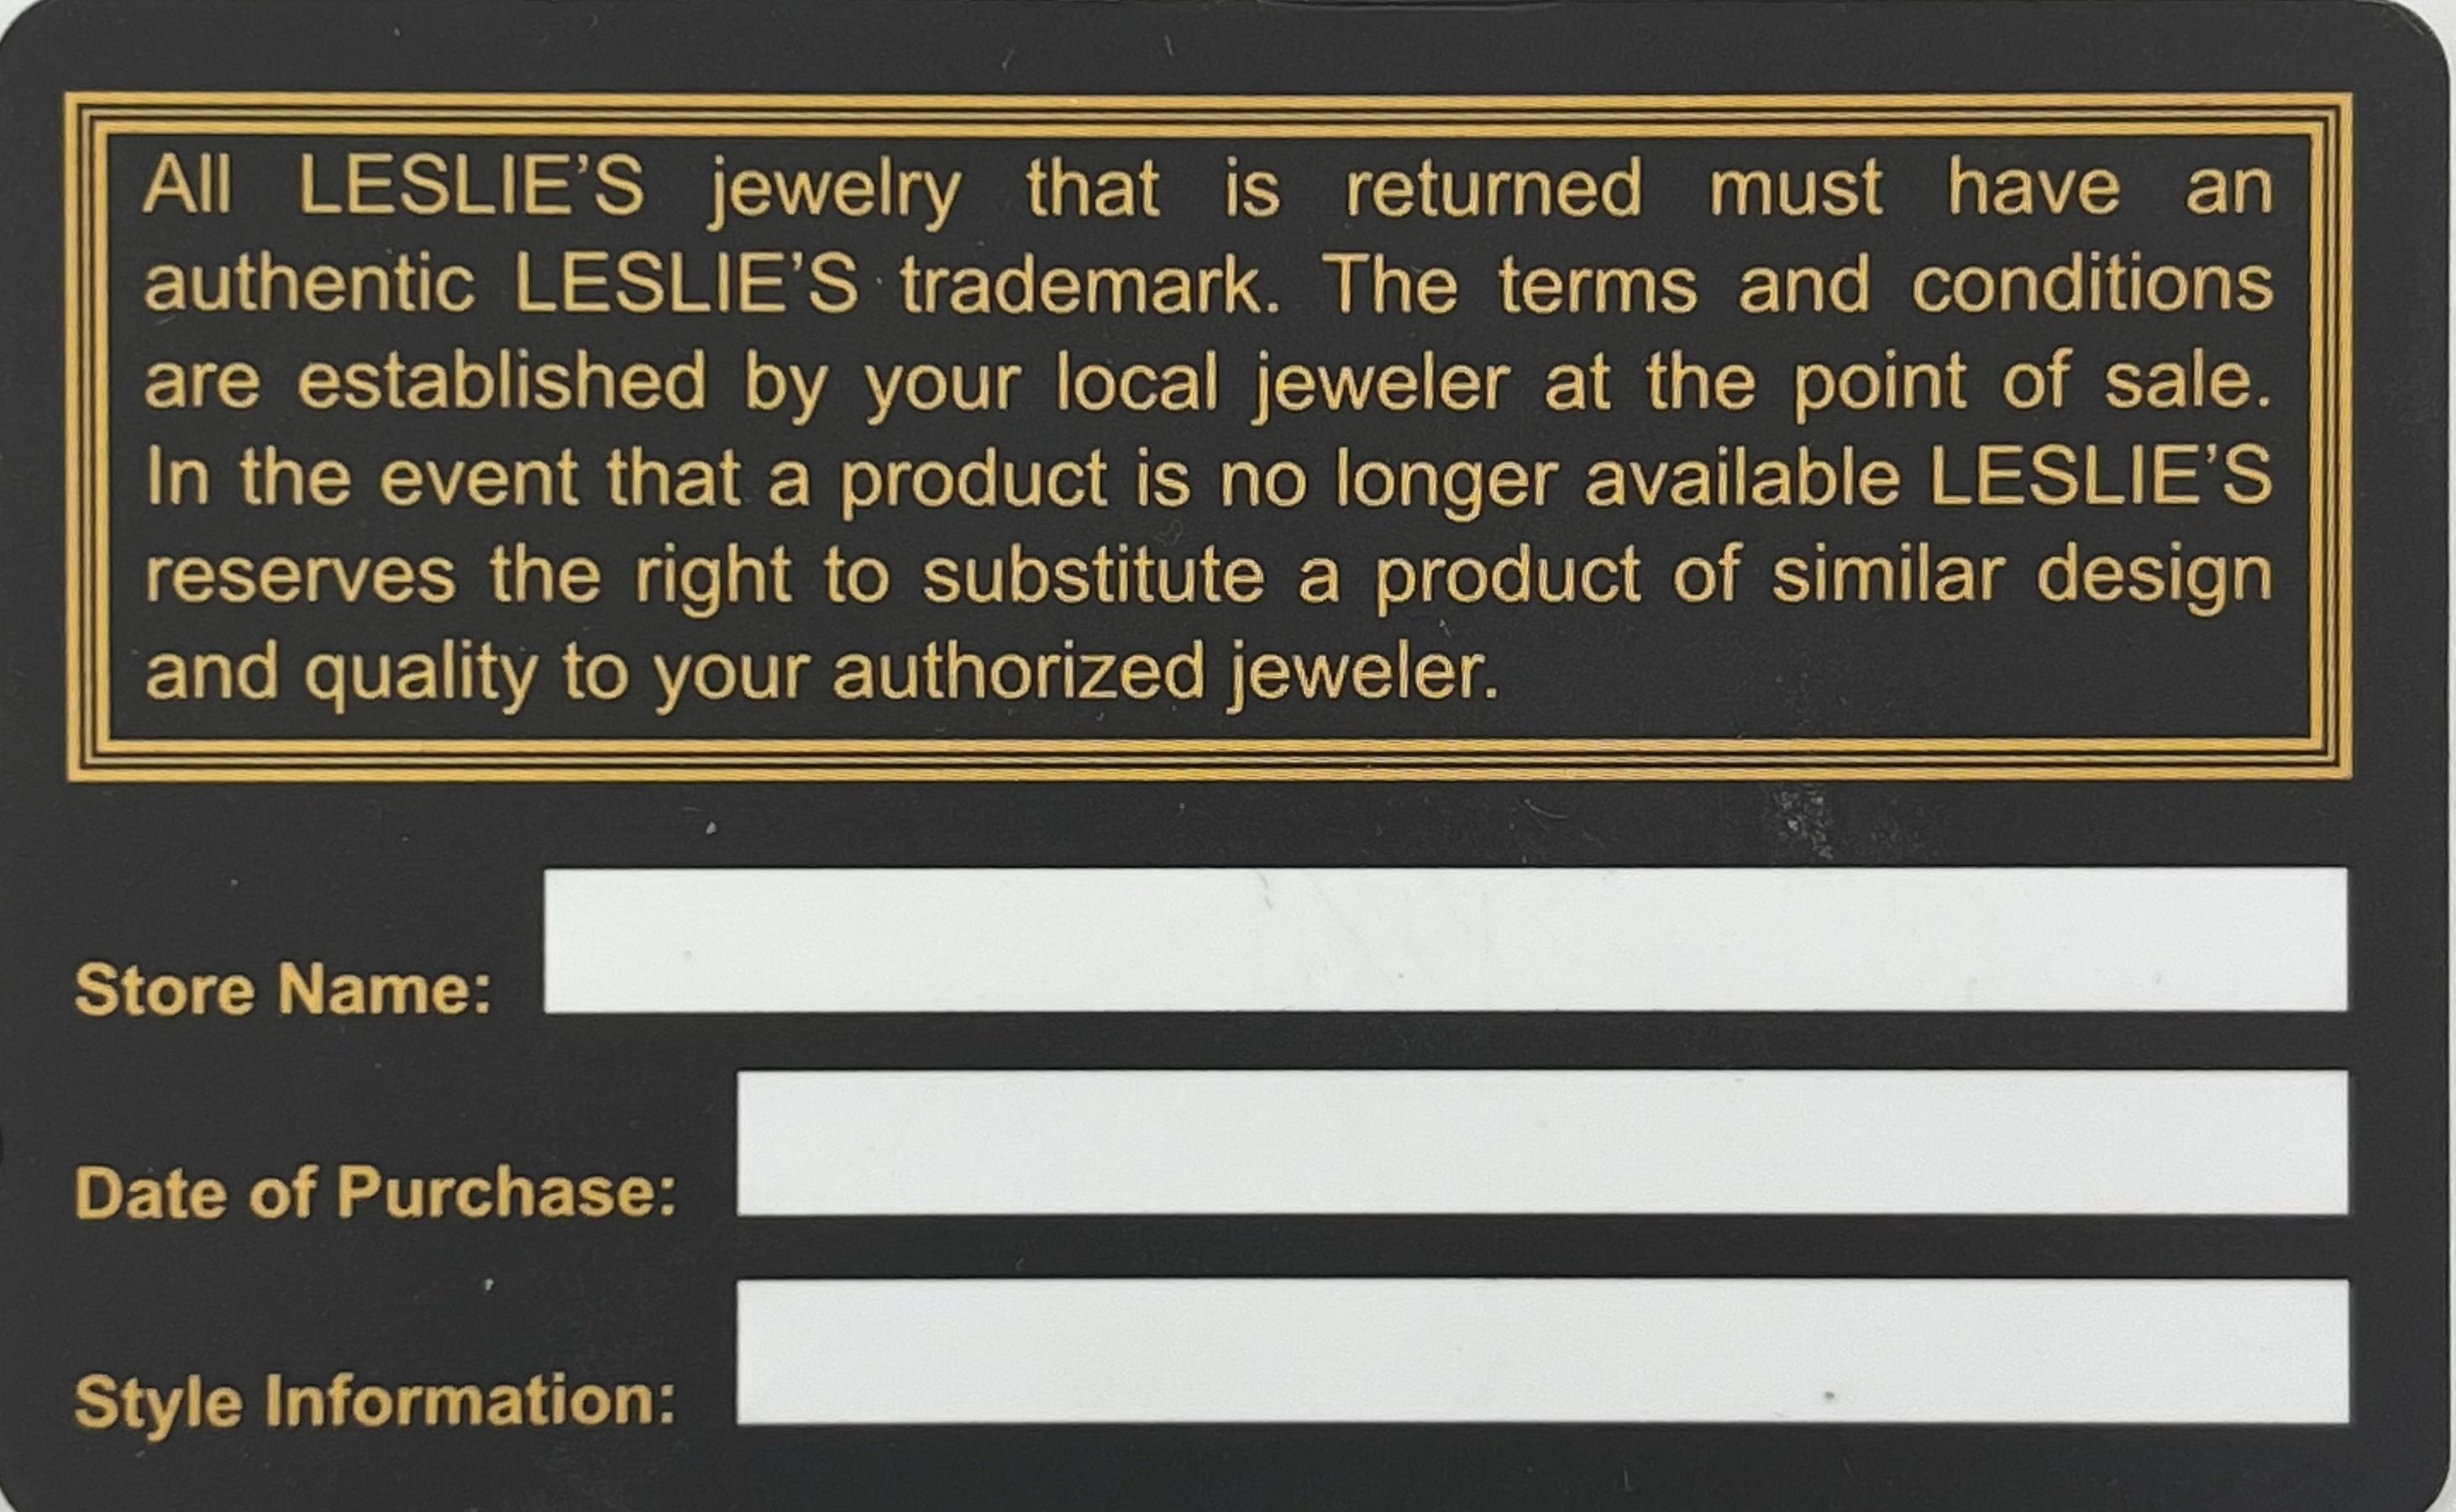 Leslie's Gold Lifetime Guarantee